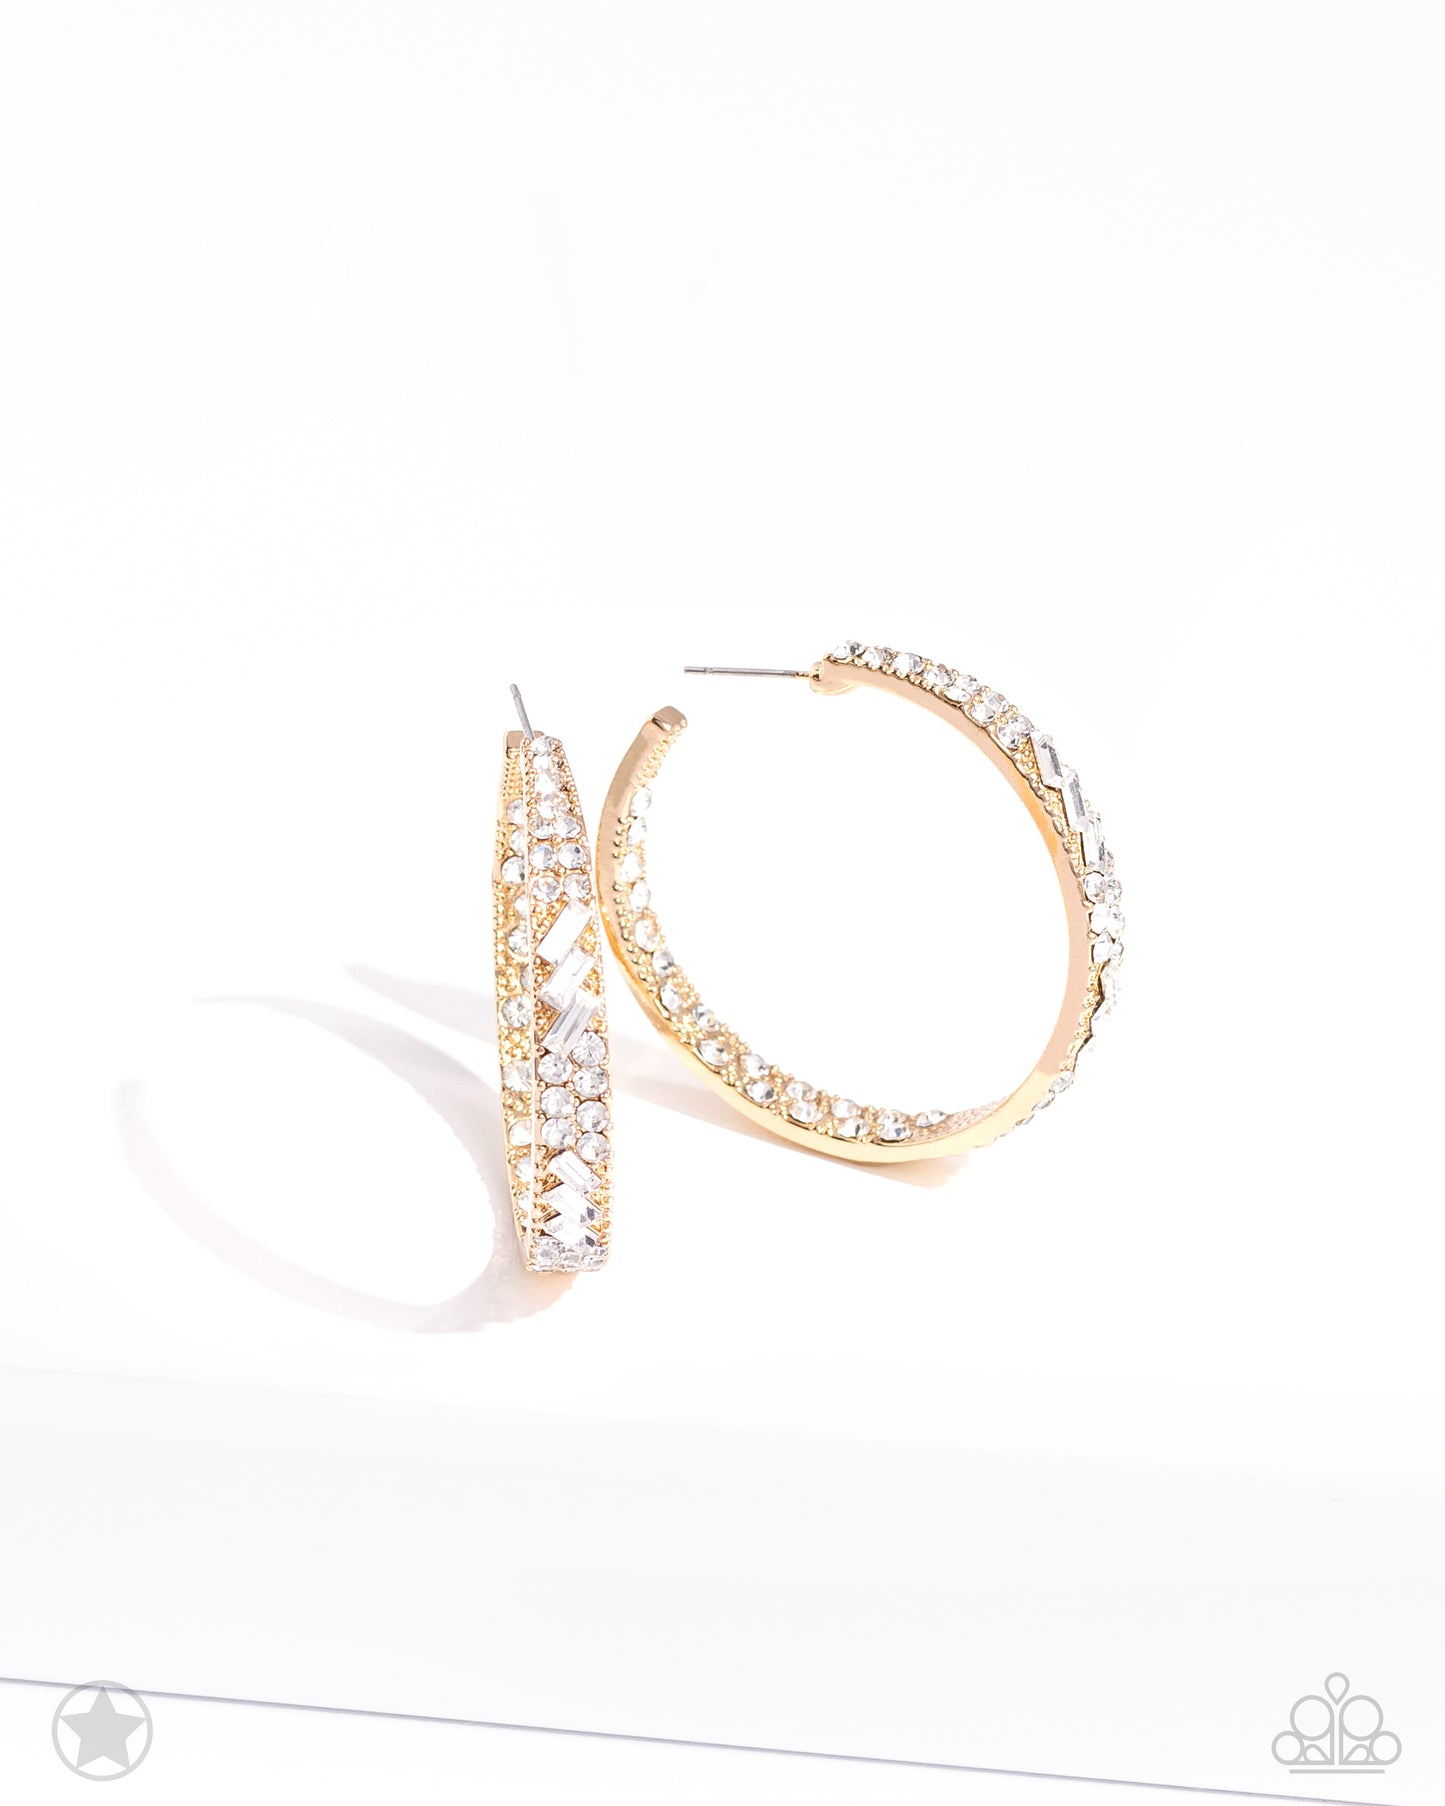 GLITZY By Association Gold Earrings For Women. Earrings for Non Binary. $5 hoop earrings. Paparazzi